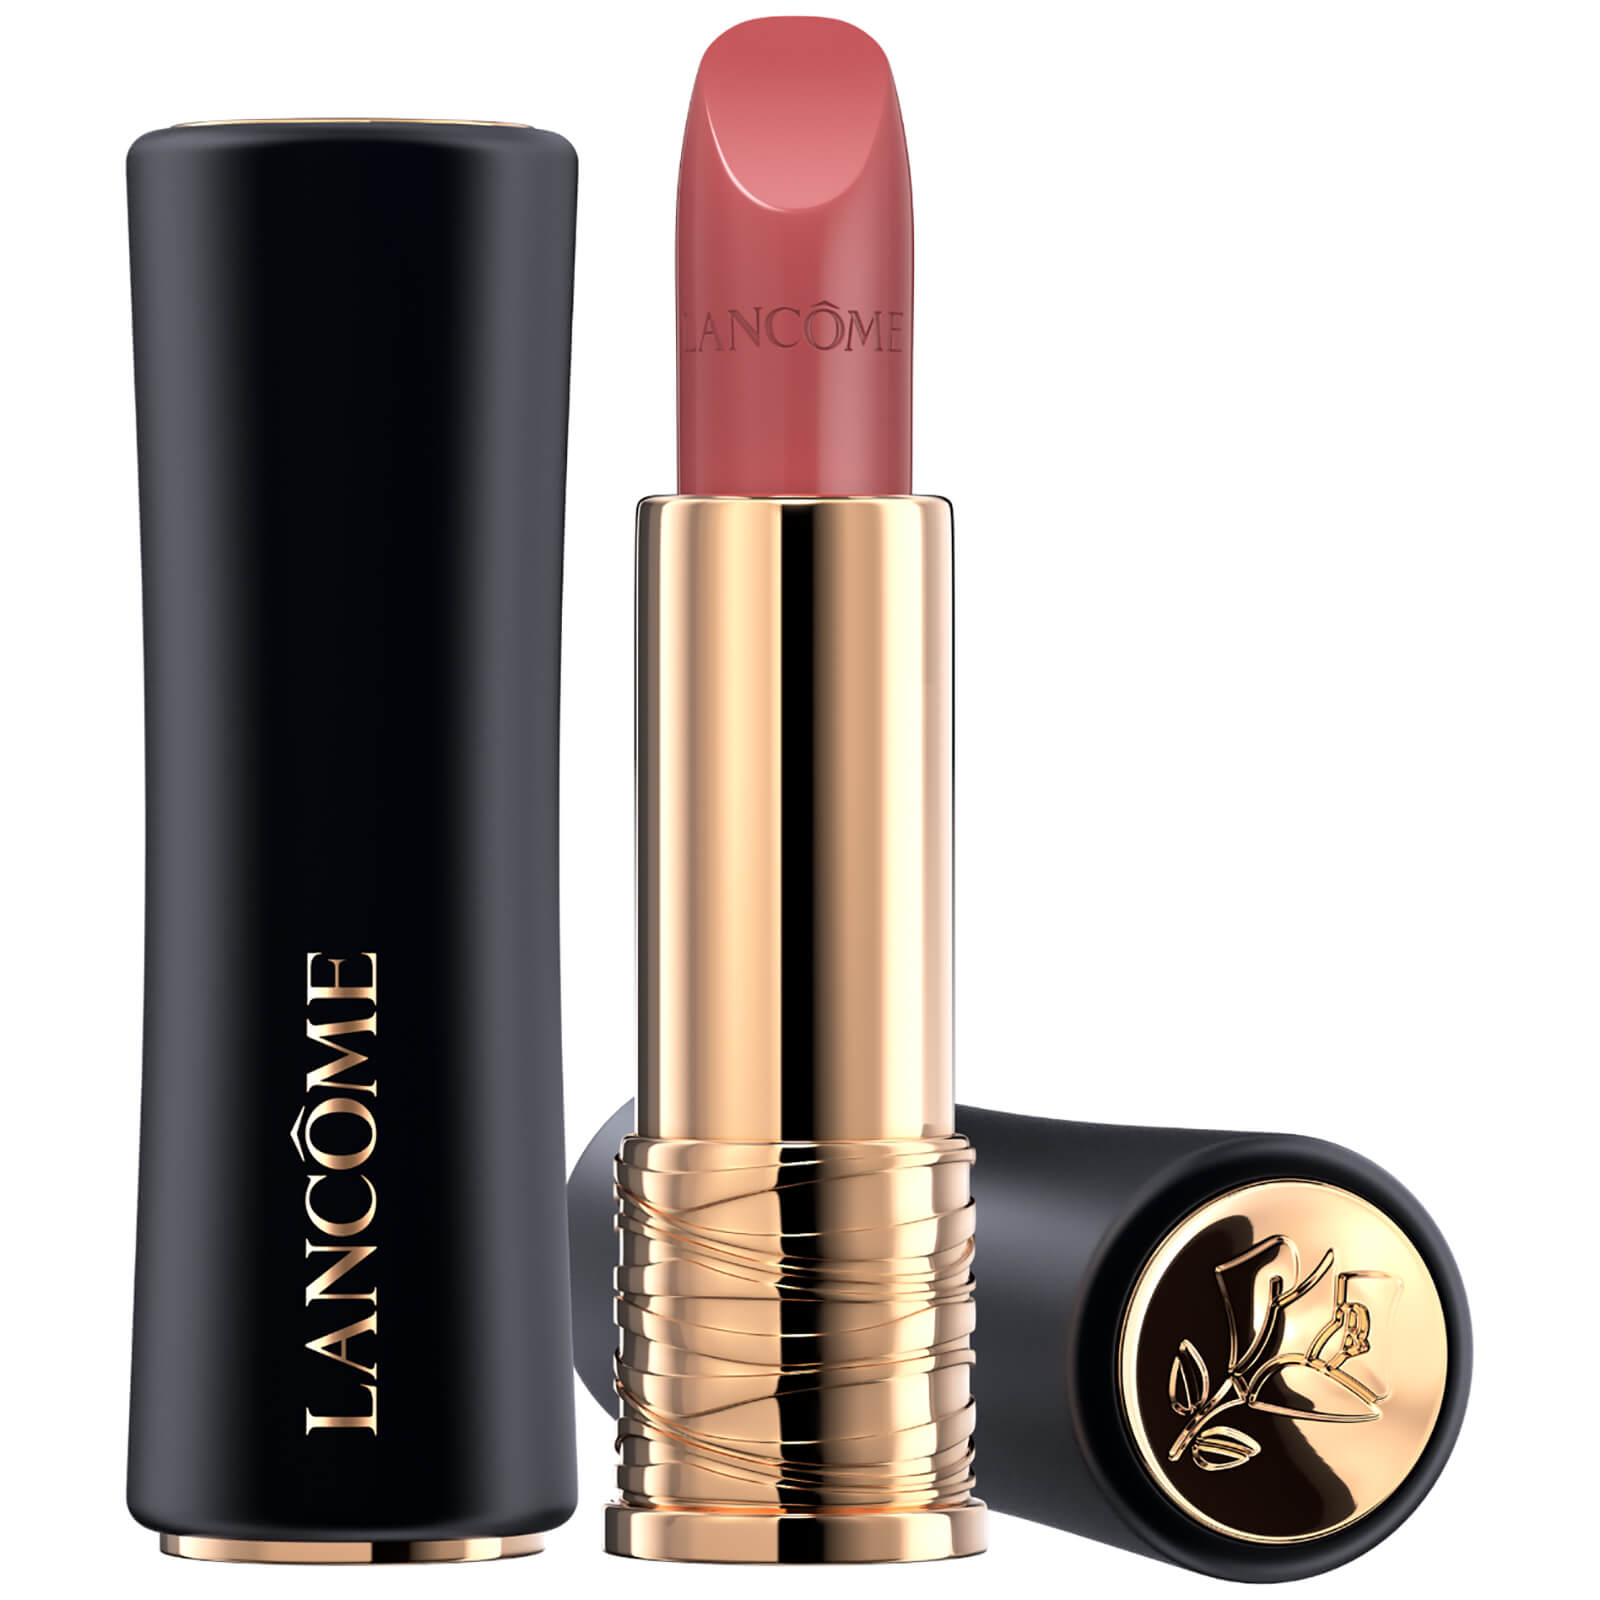 Lancôme L'Absolu Rouge Cream Lipstick 35ml (Verschiedene Farbtöne) - 264 Peut Etre